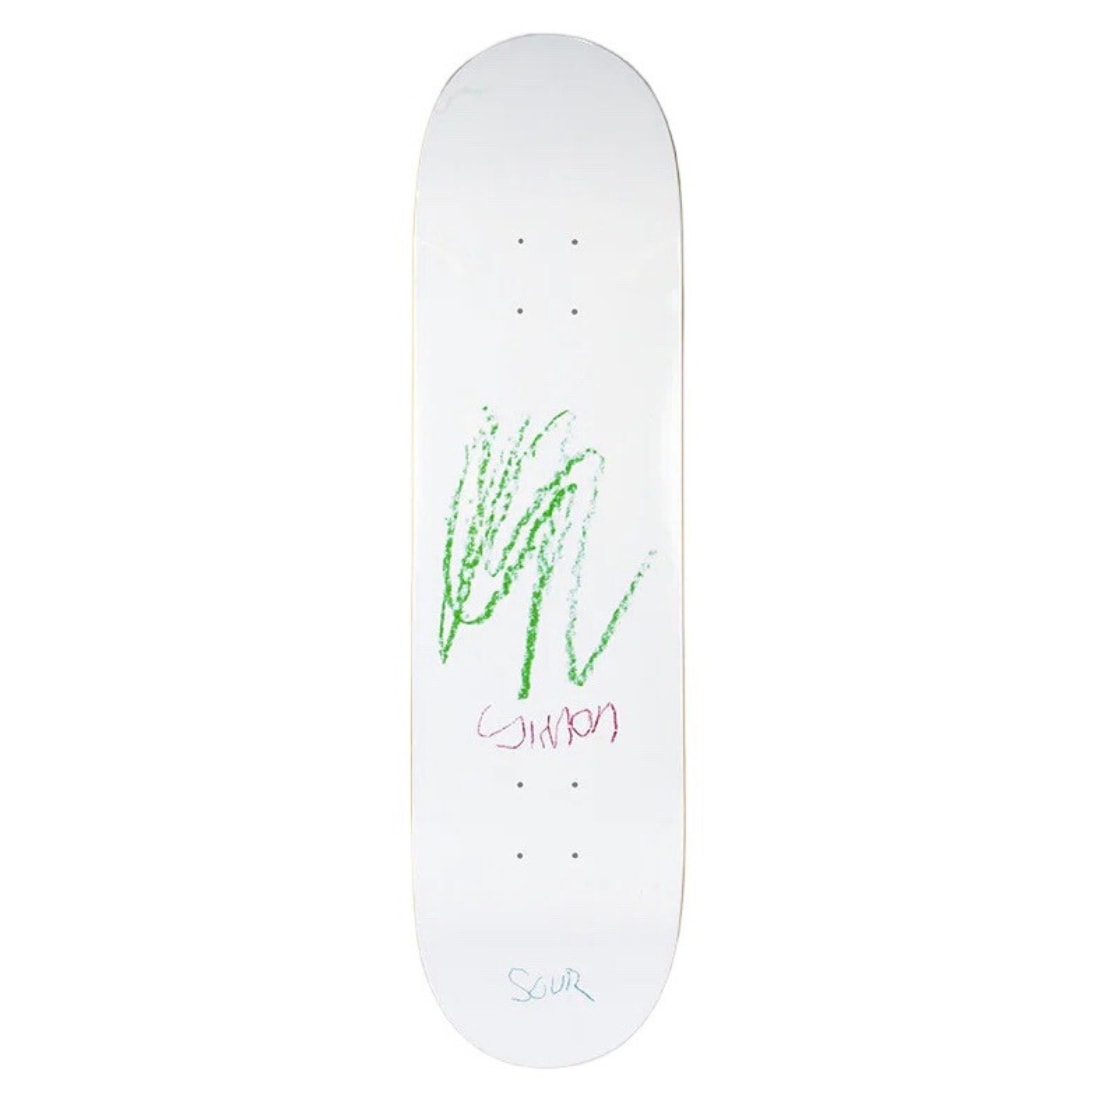 Sour 8.25" Simon Wm Art Deck - White - Skateboard Deck by Sour 8.25 inch